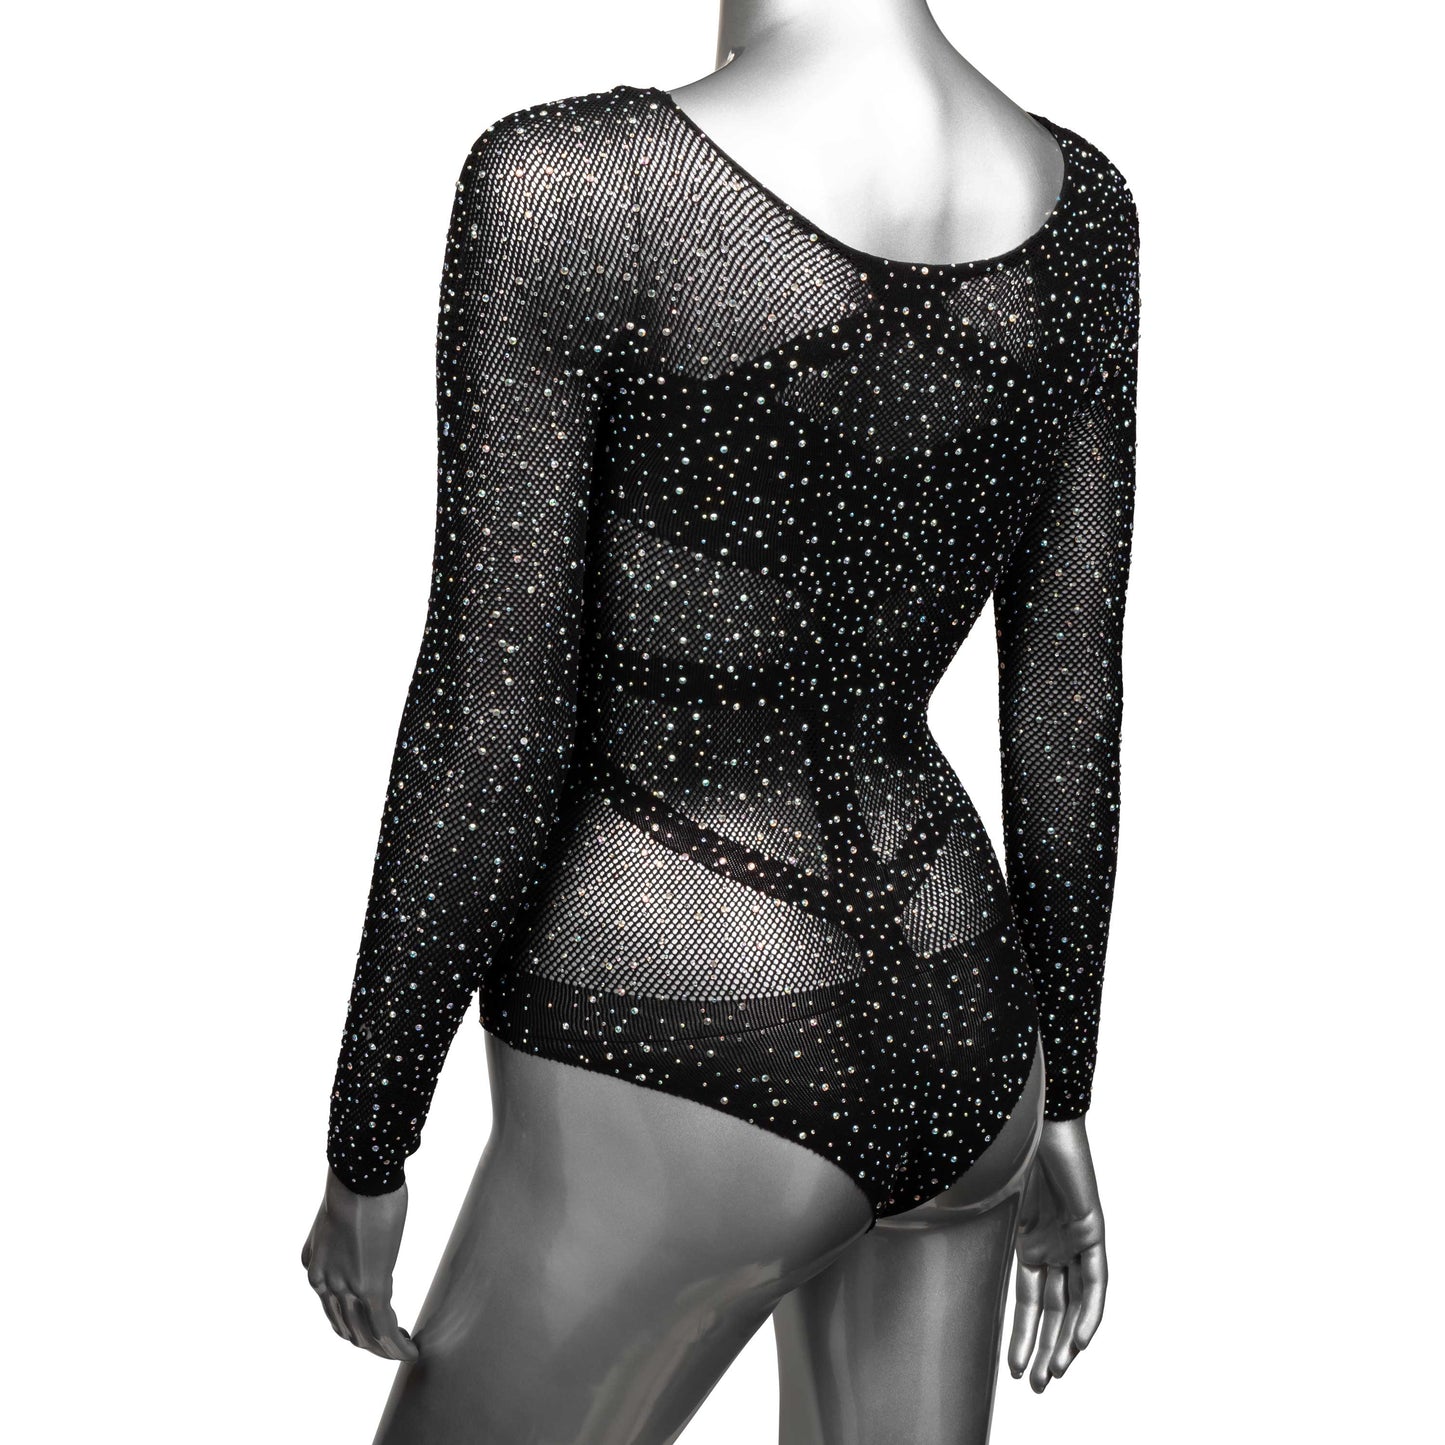 Radiance Long Sleeve Body Suit - One Size - Black SE3002153